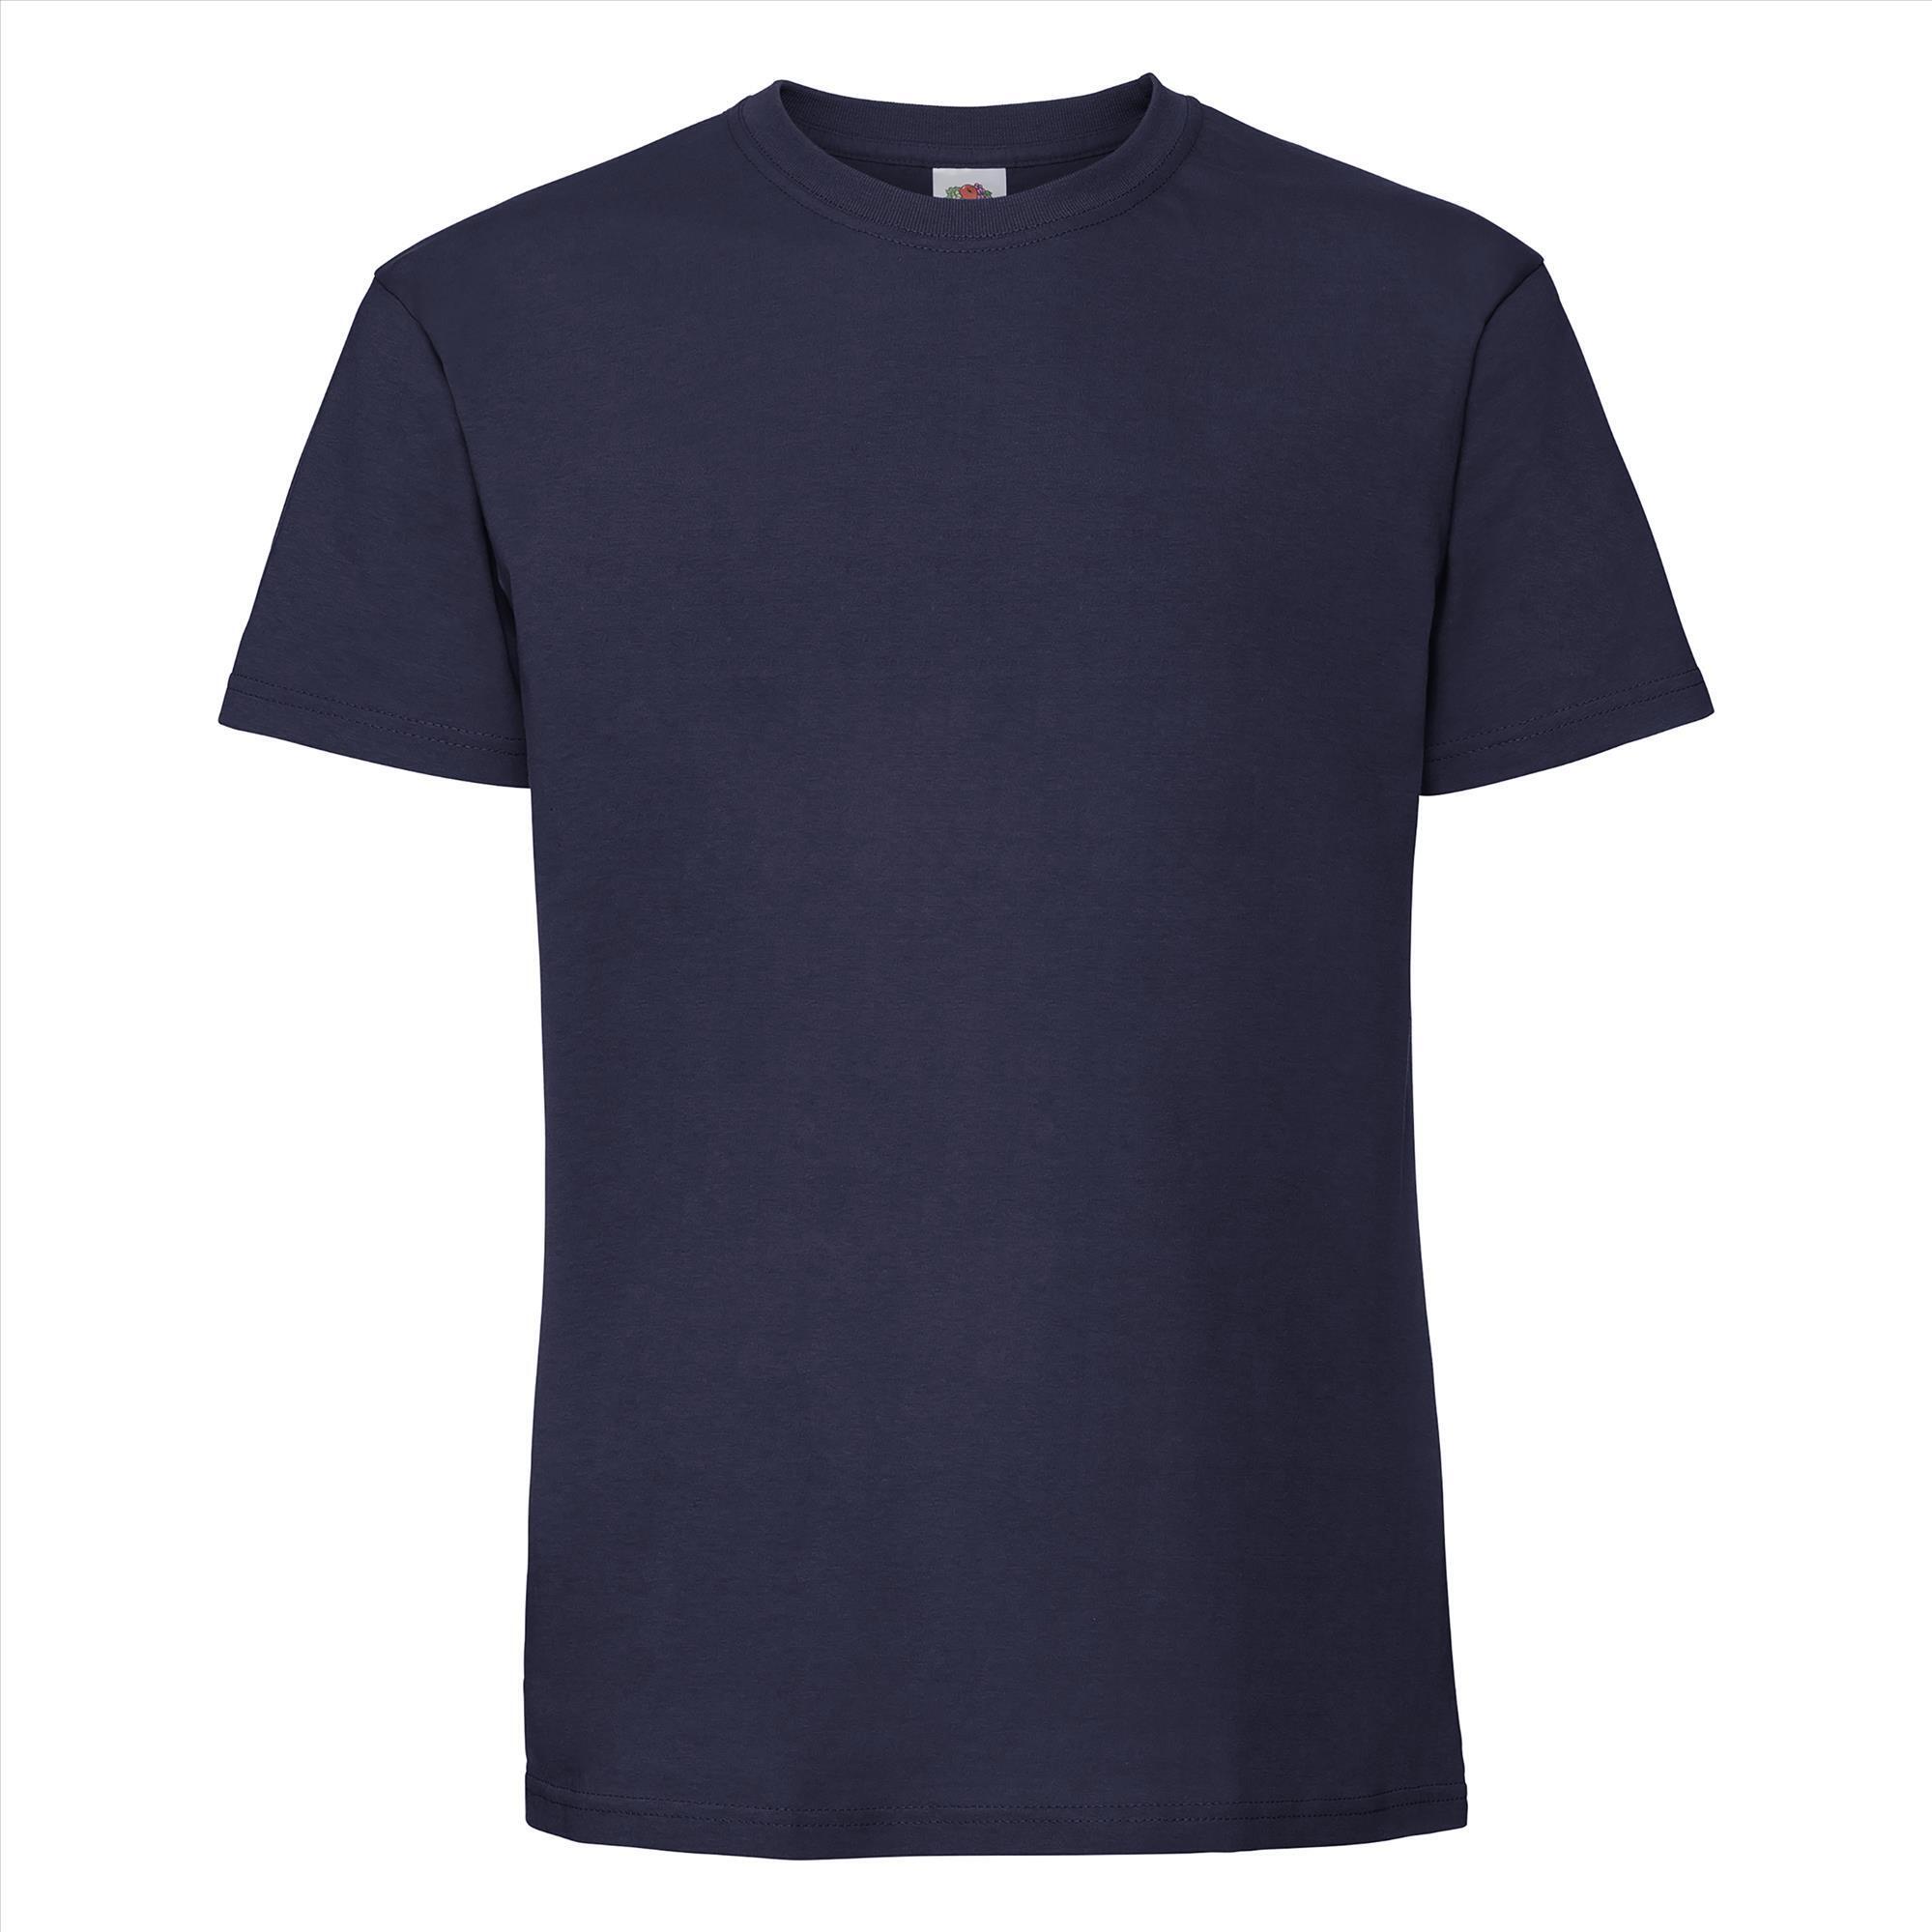 T-shirt donkerblauw korte mouwen voor mannen bedrukbaar te personaliseren